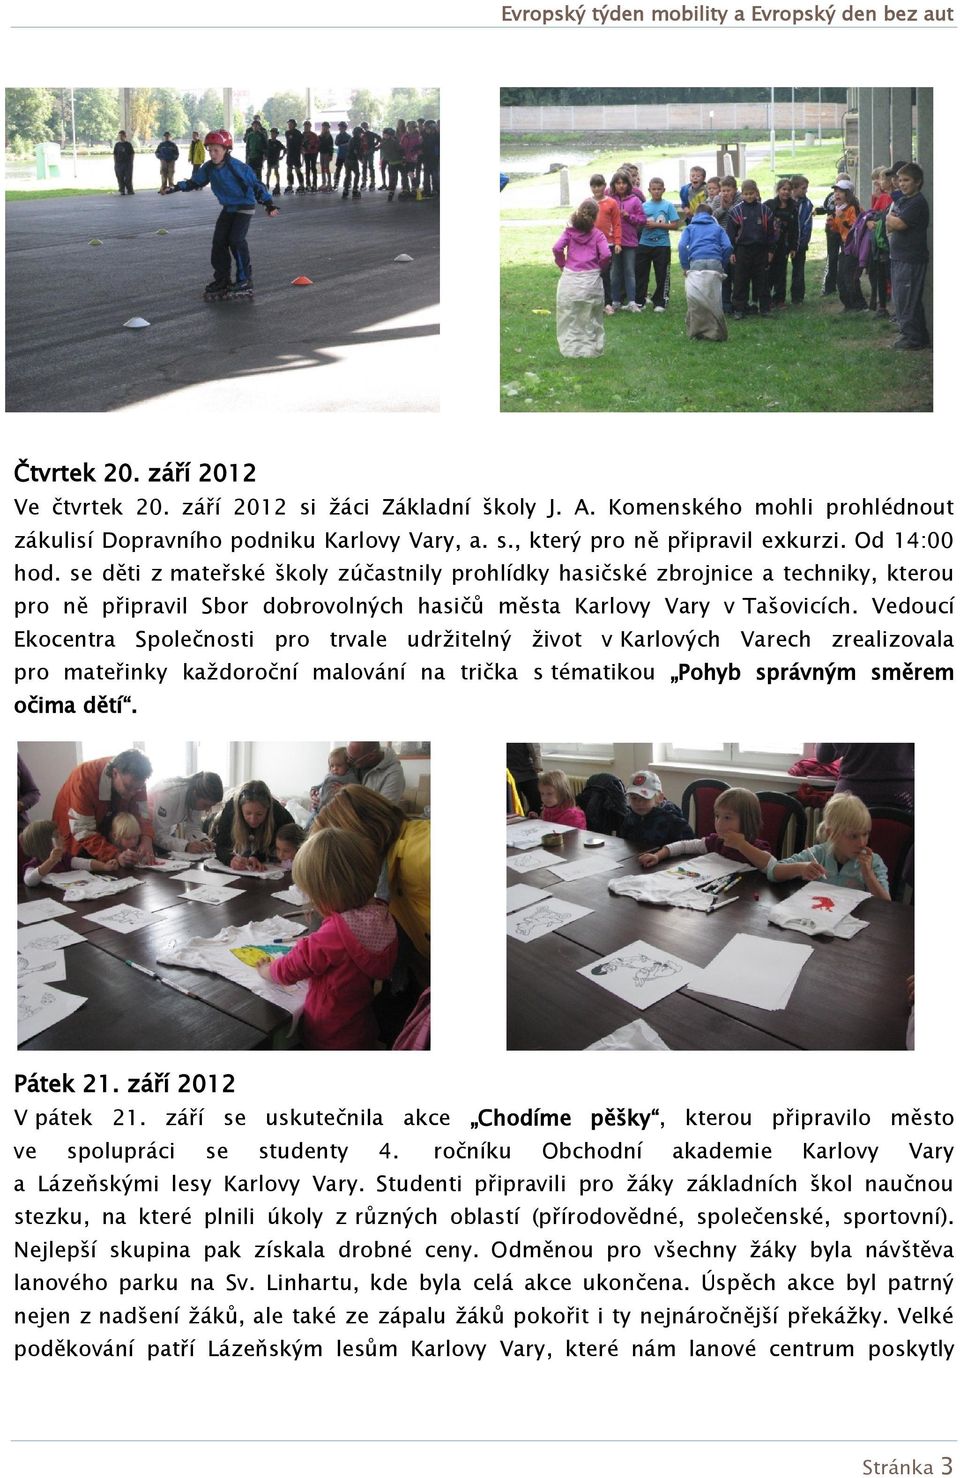 Vedoucí Ekocentra Společnosti pro trvale udržitelný život v Karlových Varech zrealizovala pro mateřinky každoroční malování na trička s tématikou Pohyb správným směrem očima dětí. Pátek 21.